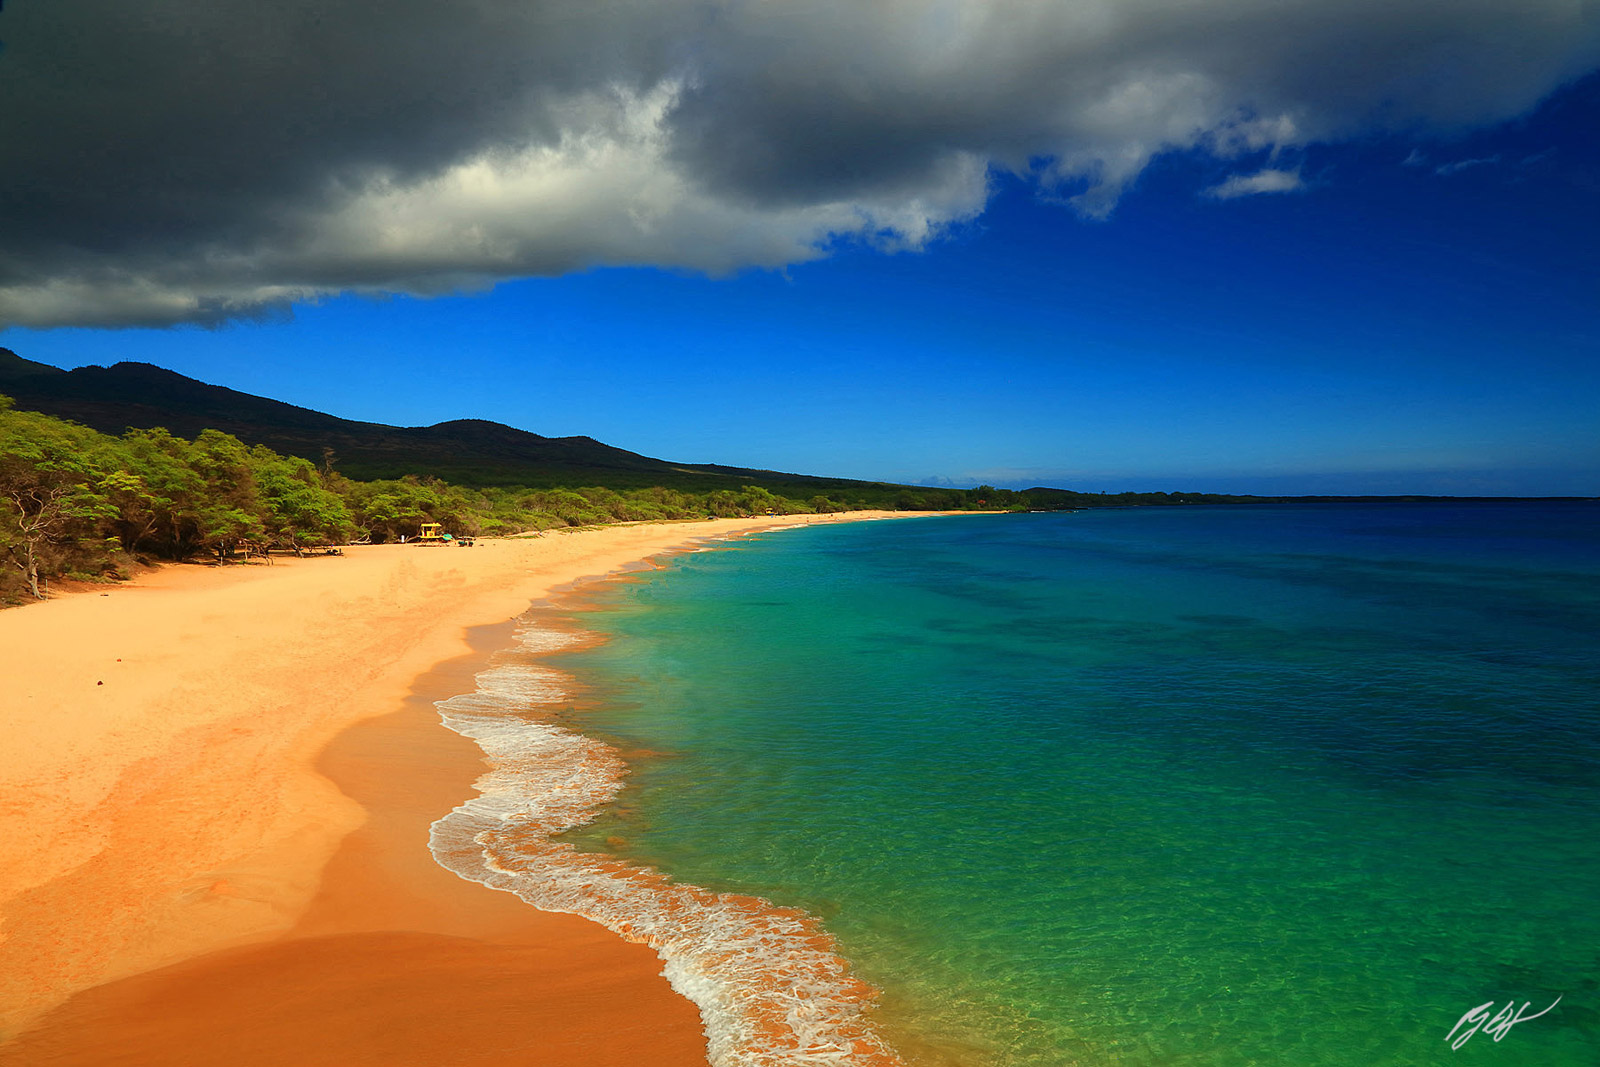 Big Beach on the Island of Maui in the Hawaiin Islands